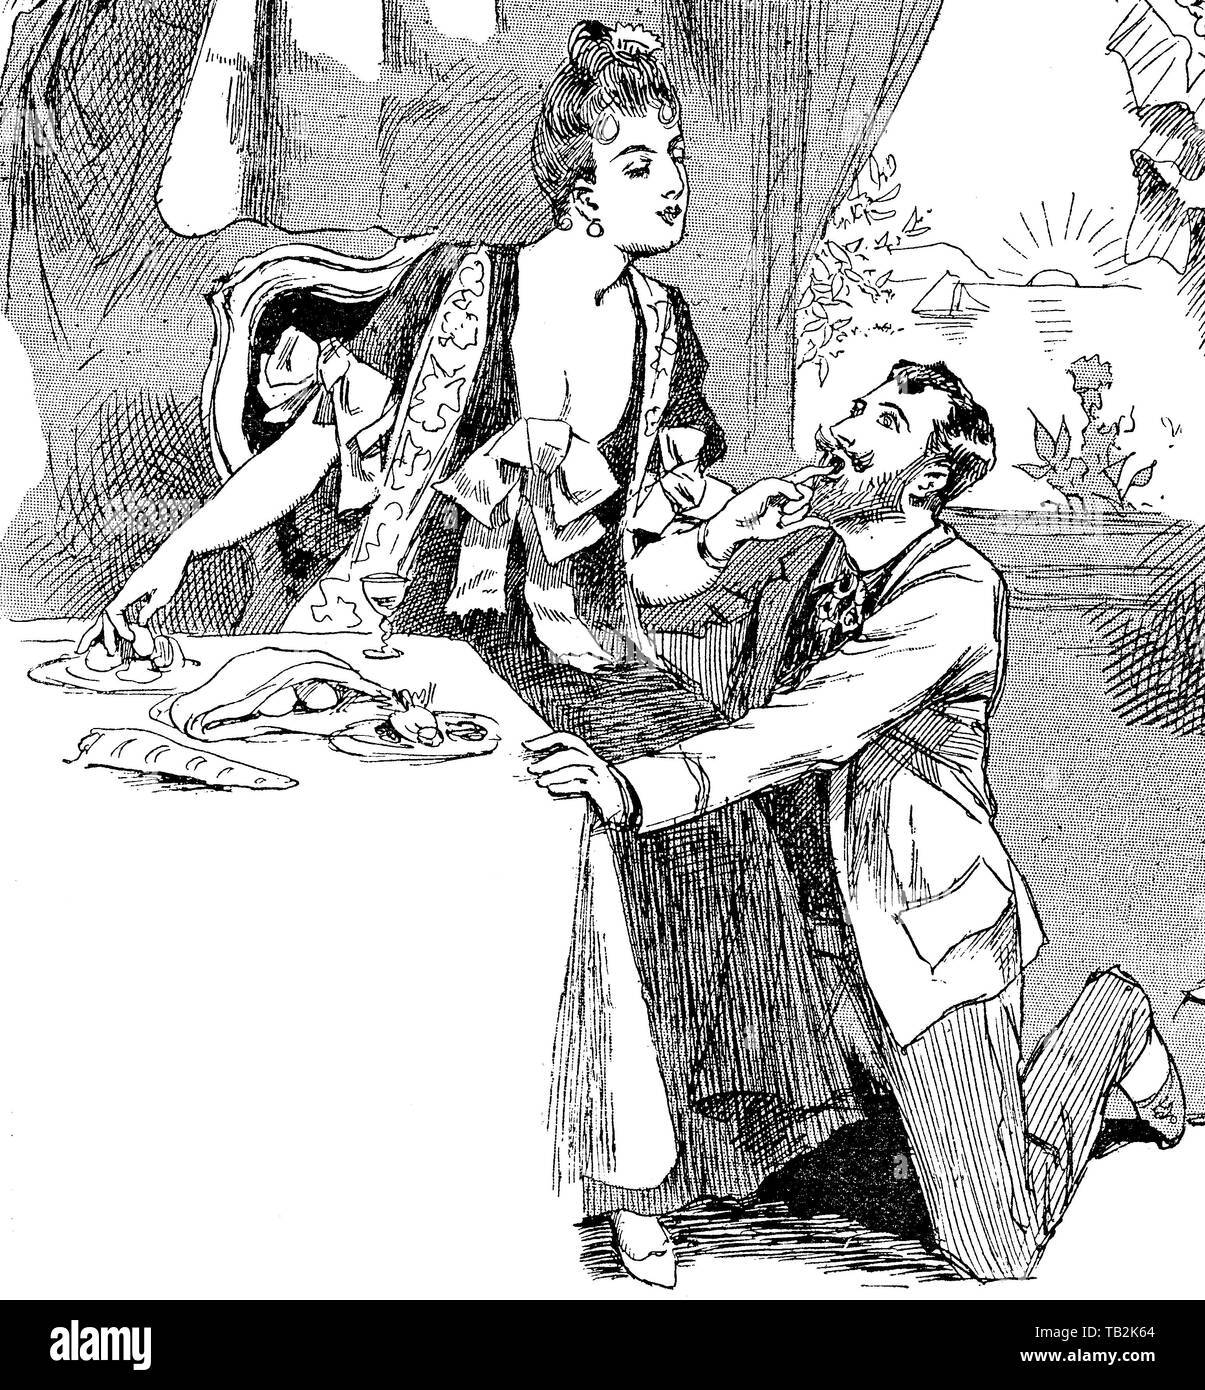 Caricature d'époque : l'homme s'agenouille avec un romantinc proposition ; la dame est peut-être plus d'intérêt dans les aliments Banque D'Images